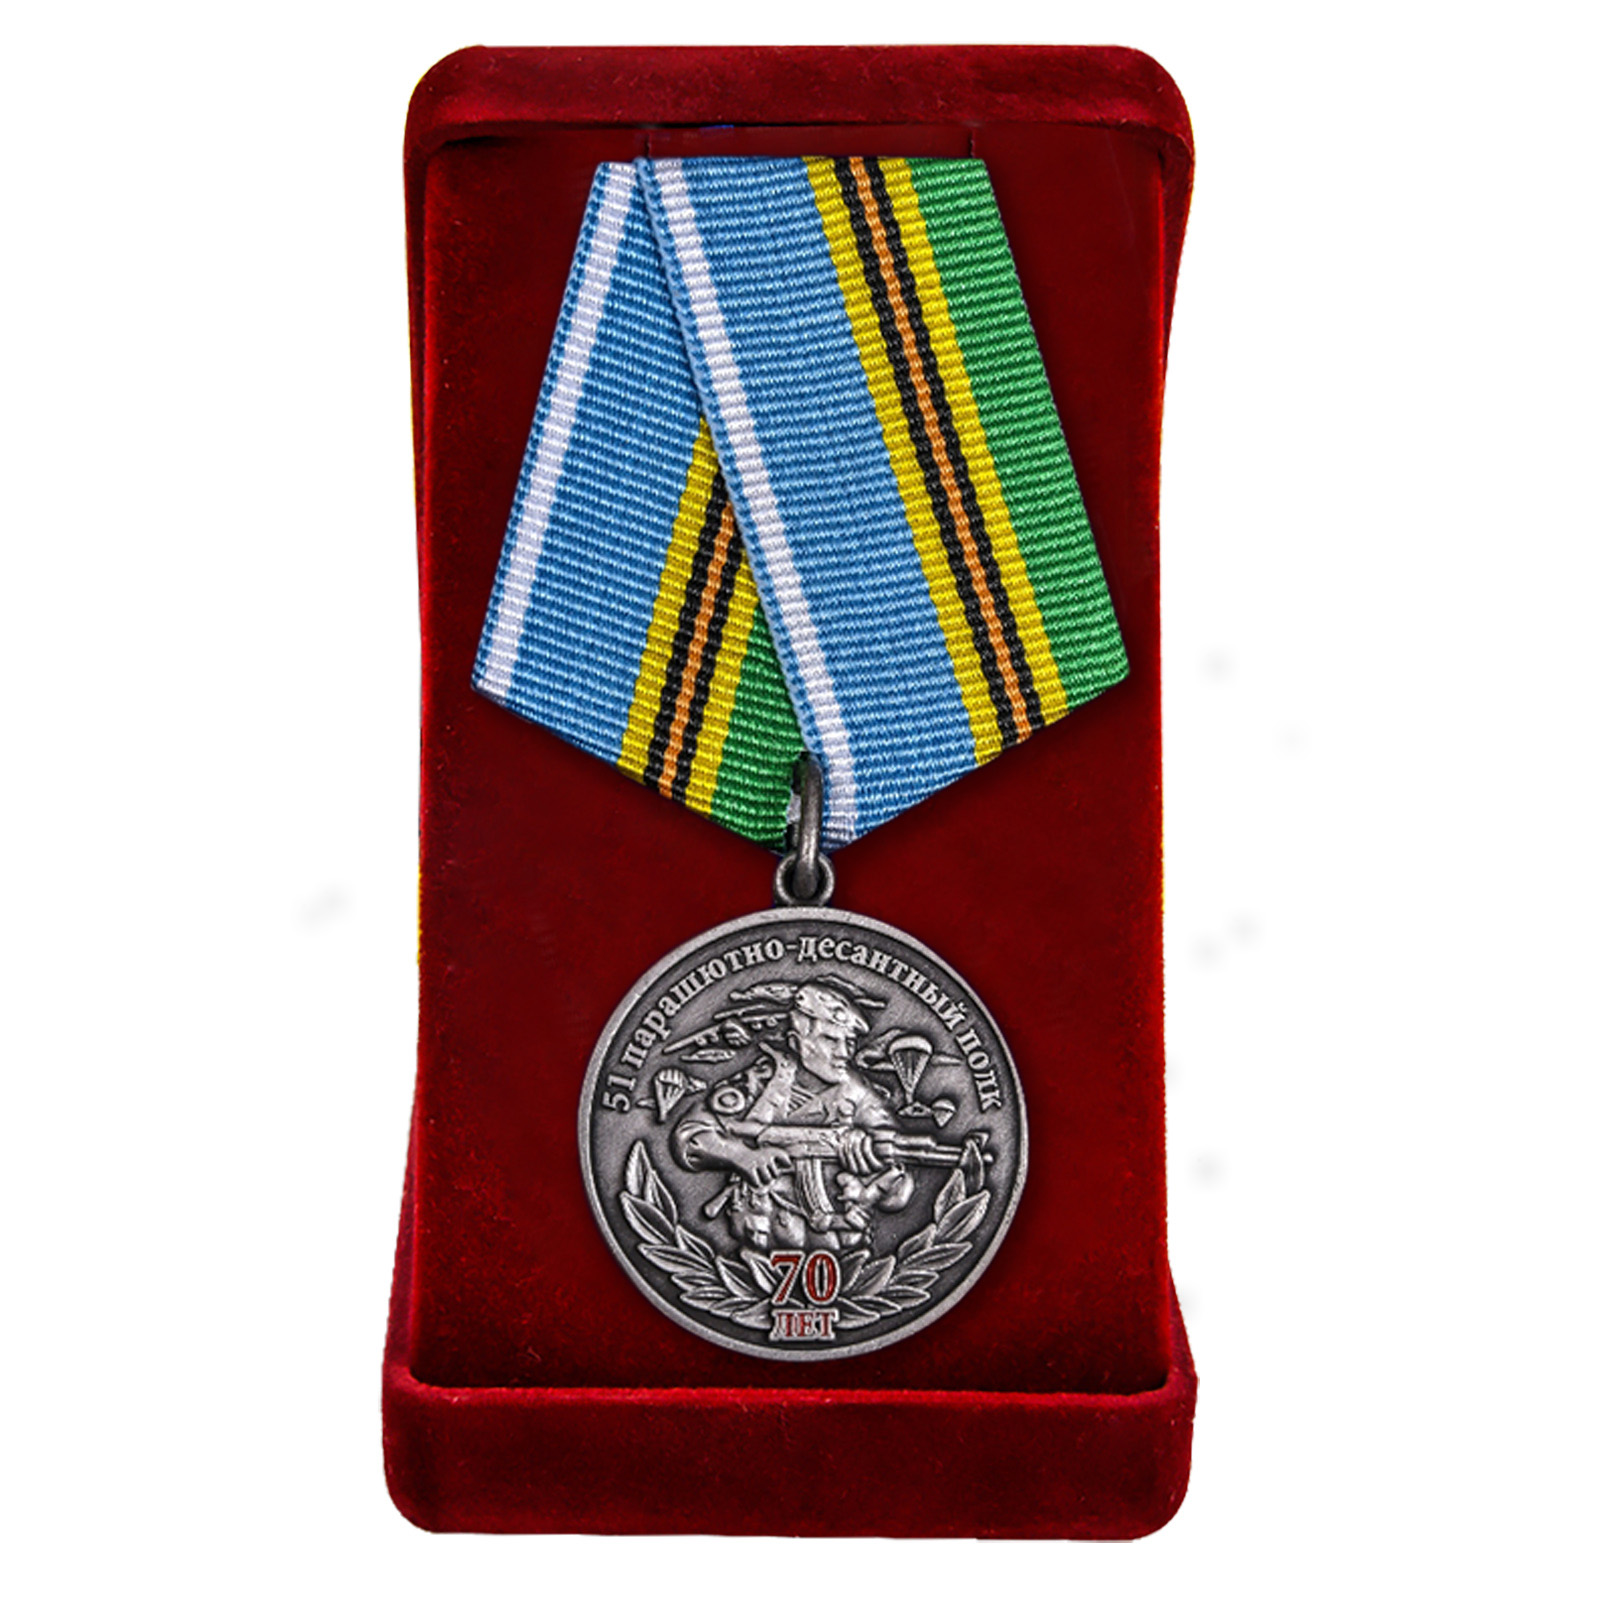 Медаль "51 Парашютно-десантной полк 70 лет"